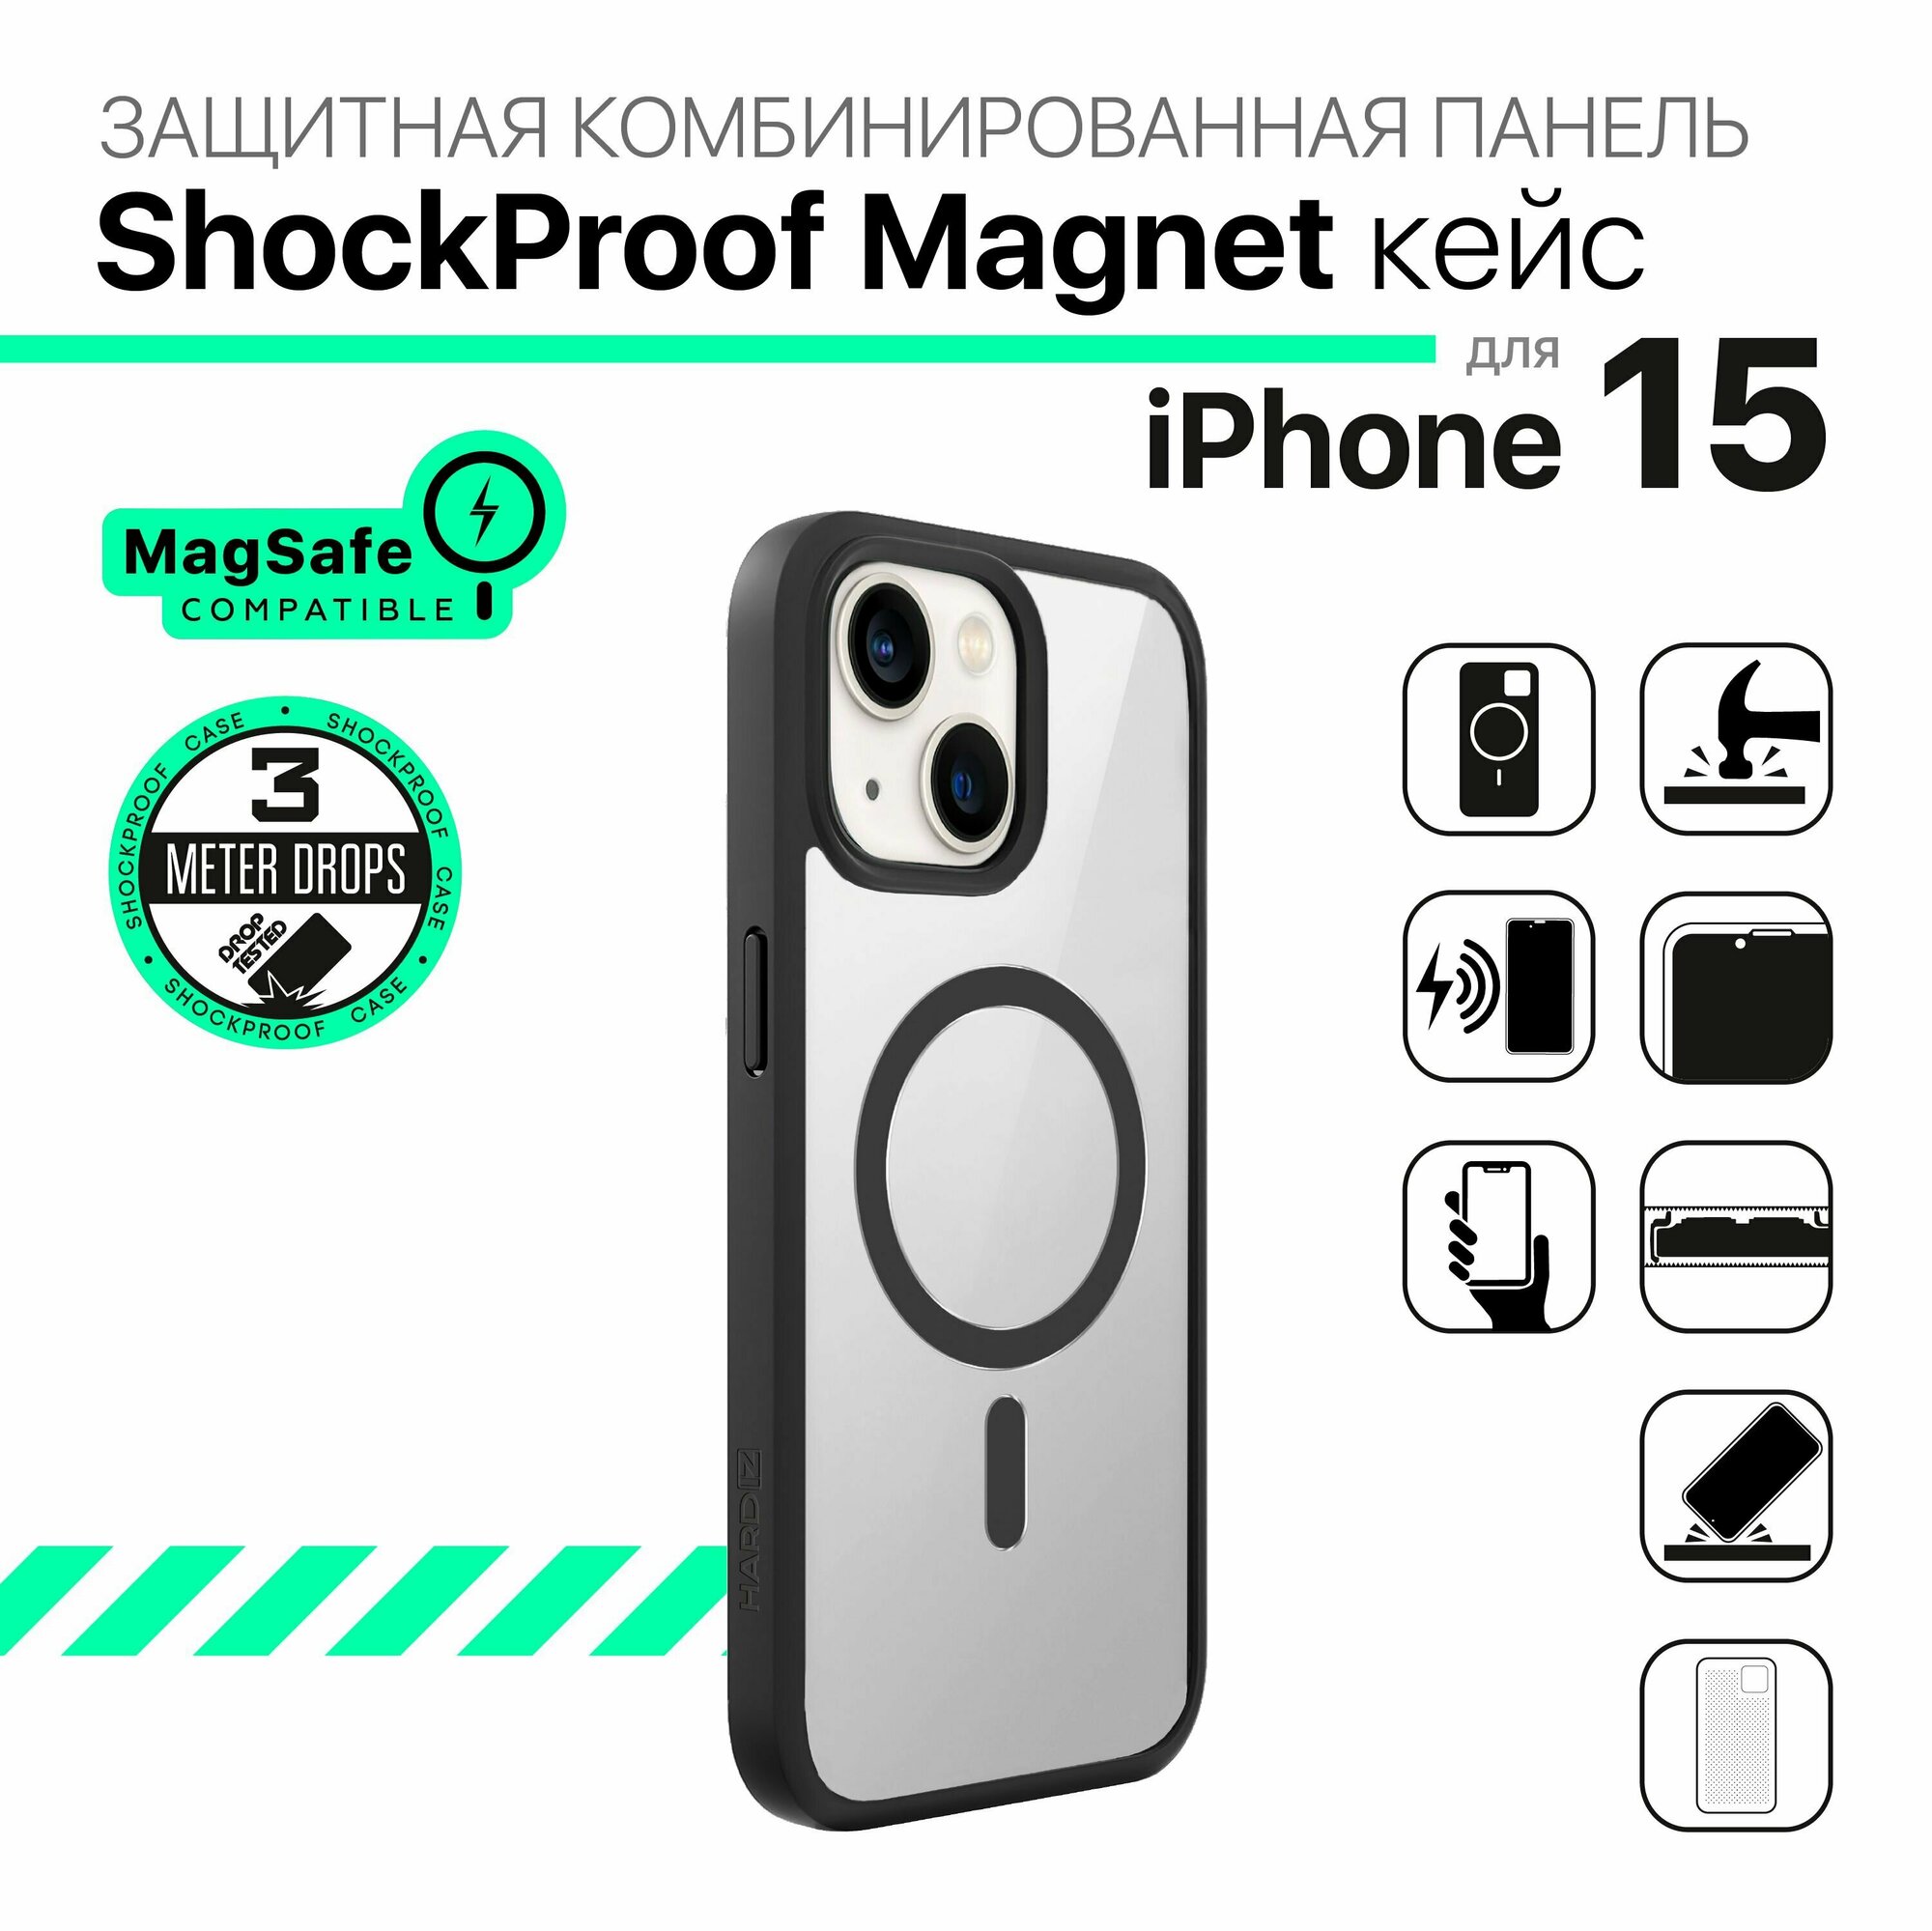 Защитная комбинированная панель HARDIZ ShockProof Magnet Case для iPhone 15 Черный с магнитным кольцом MagSafe